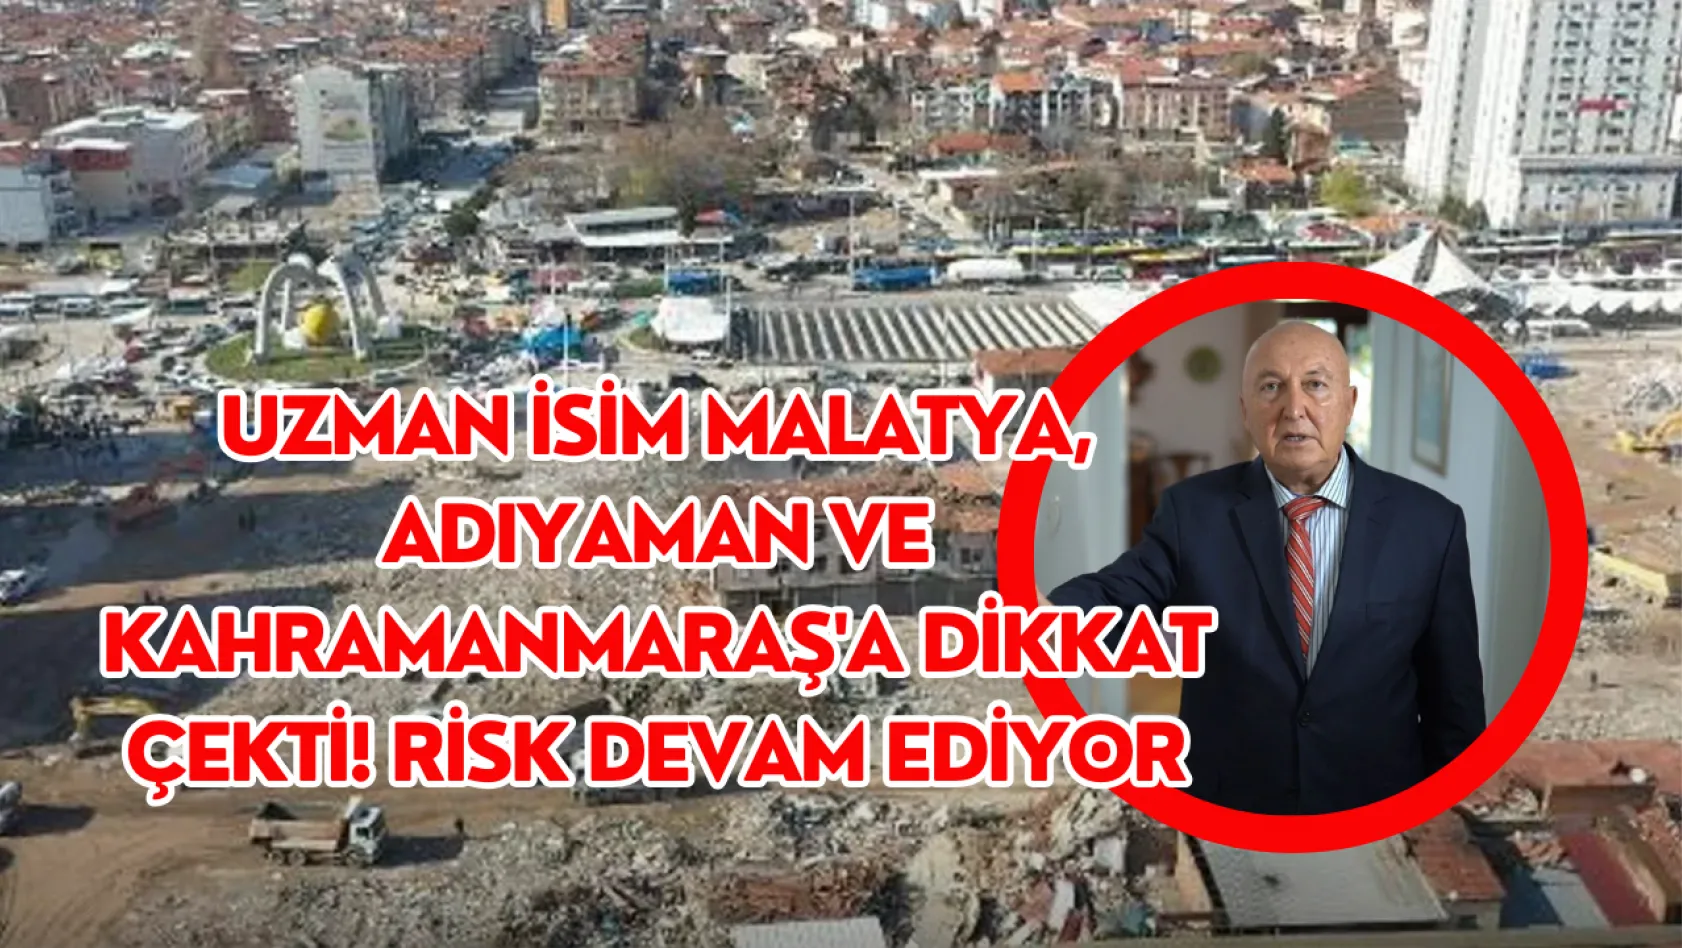 Uzman isim Malatya, Adıyaman ve Kahramanmaraş'a dikkat çekti! Risk devam ediyor